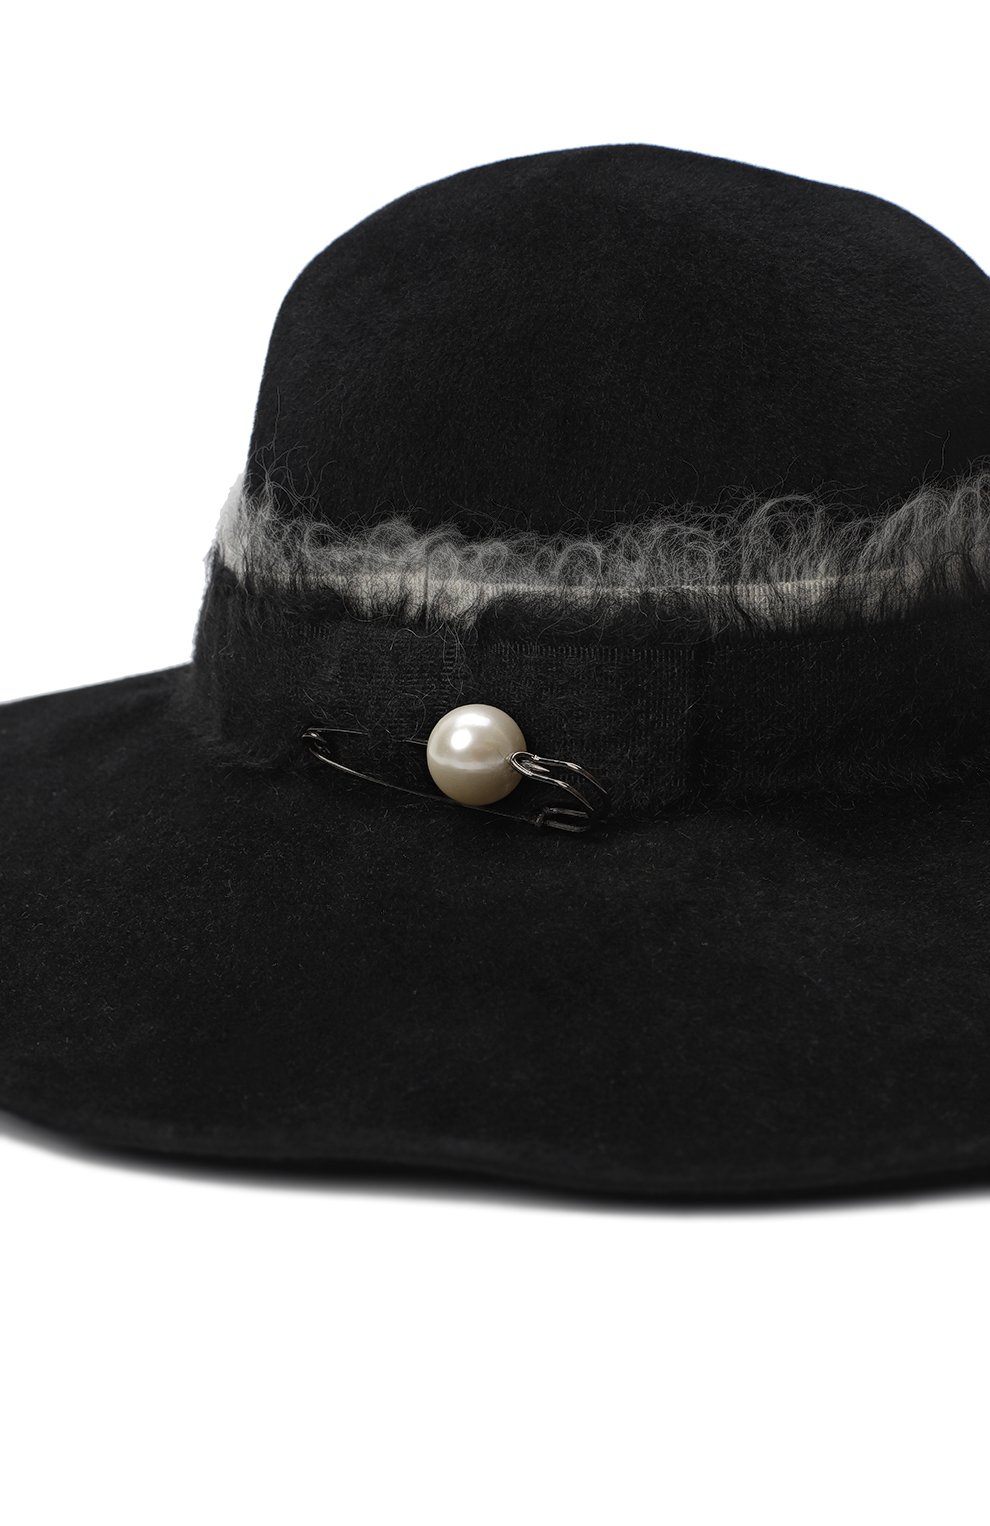 Фетровая шляпа | Eugenia Kim | Чёрный - 3